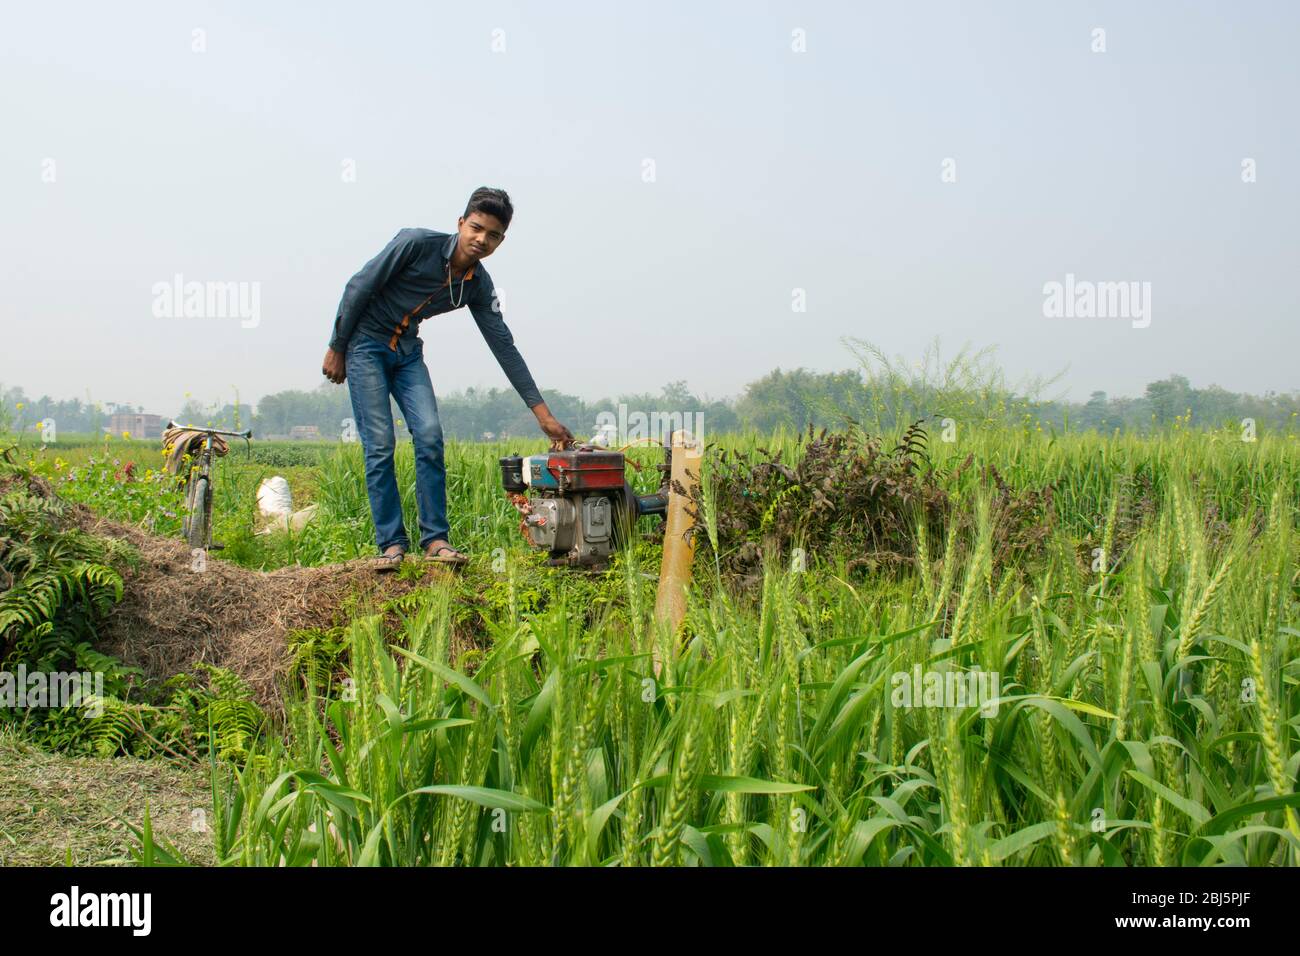 Jeunes garçons travaillant sur le terrain, Inde Banque D'Images